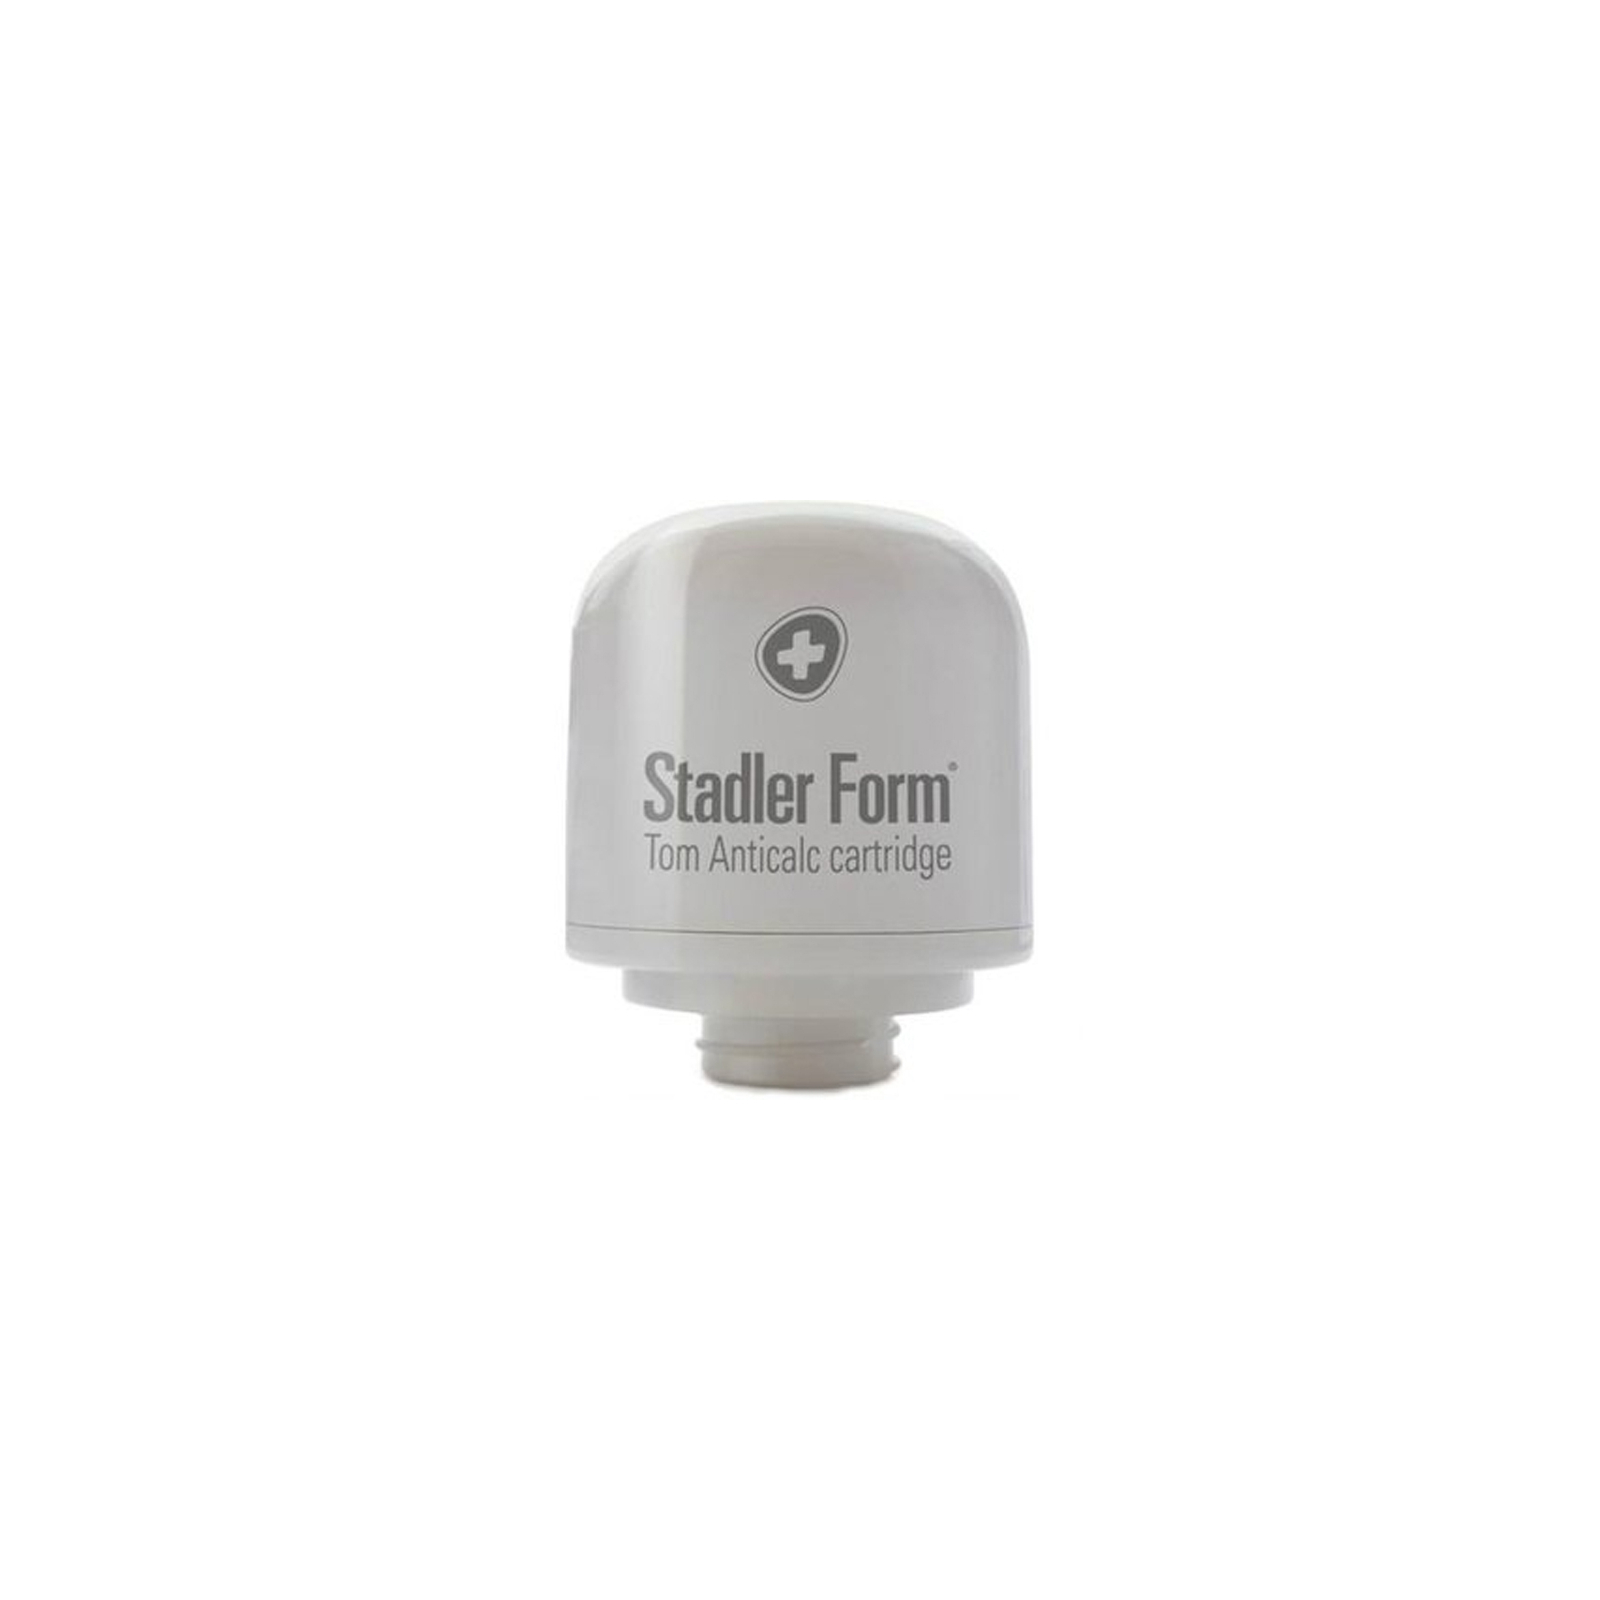 Фильтр для увлажнителя воздуха Stadler form Anticalc Cartridge T-010 (T010)